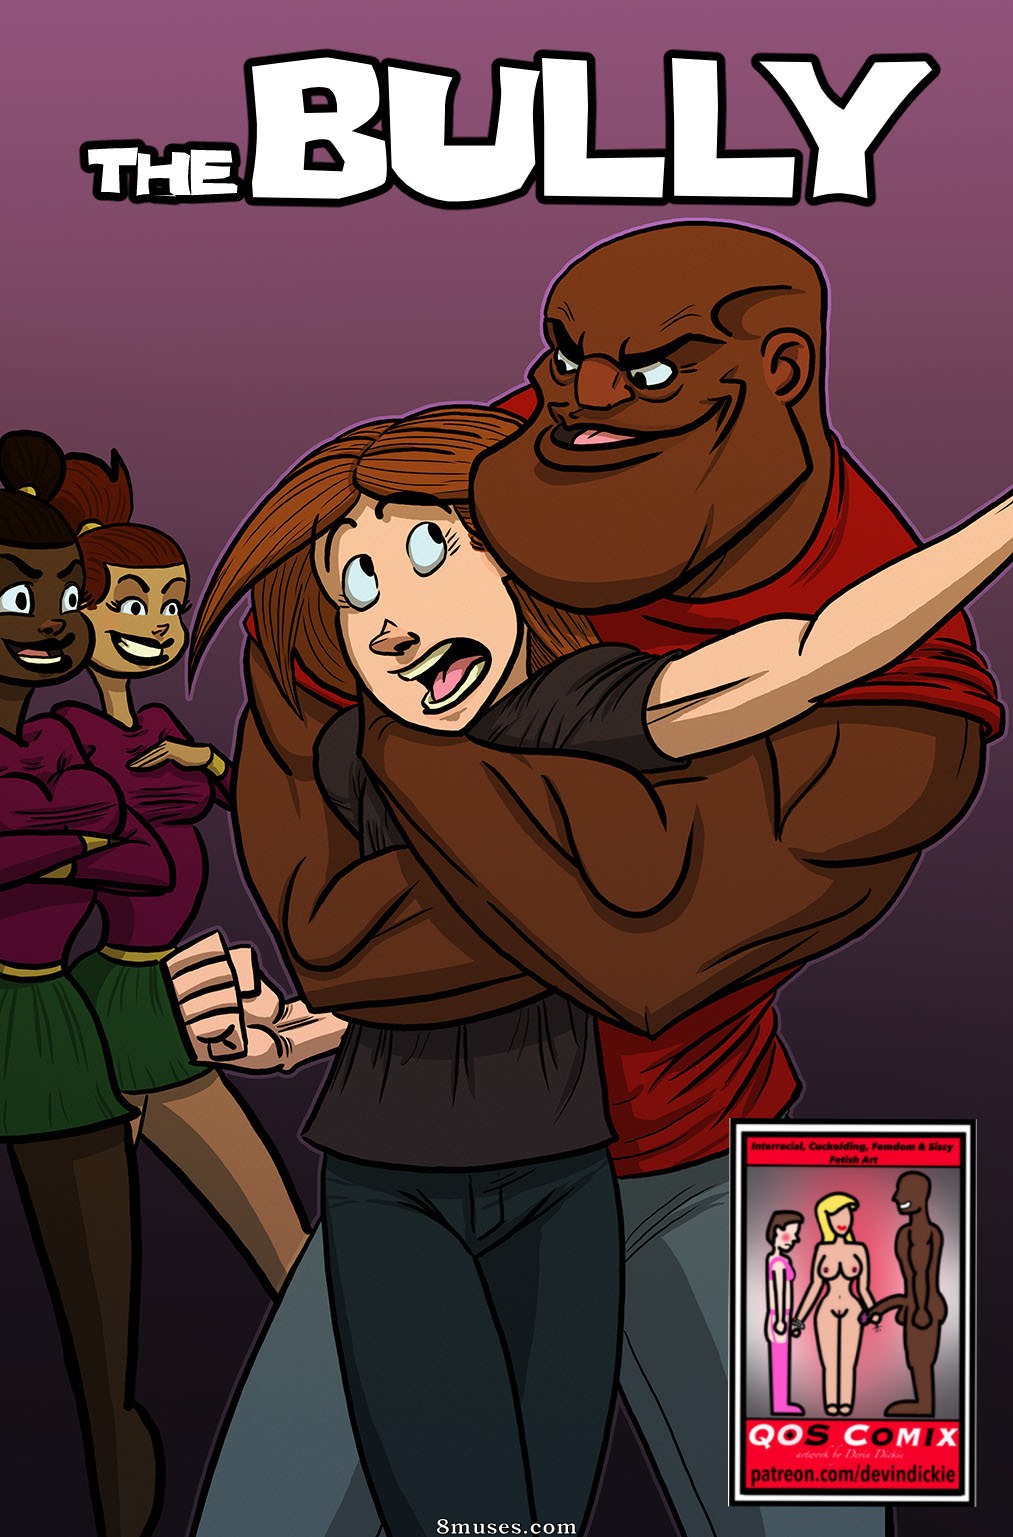 Bbc Cartoons Interracial Porn Comic Full - The Bully Issue 1 - 8muses Comics - Sex Comics and Porn Cartoons